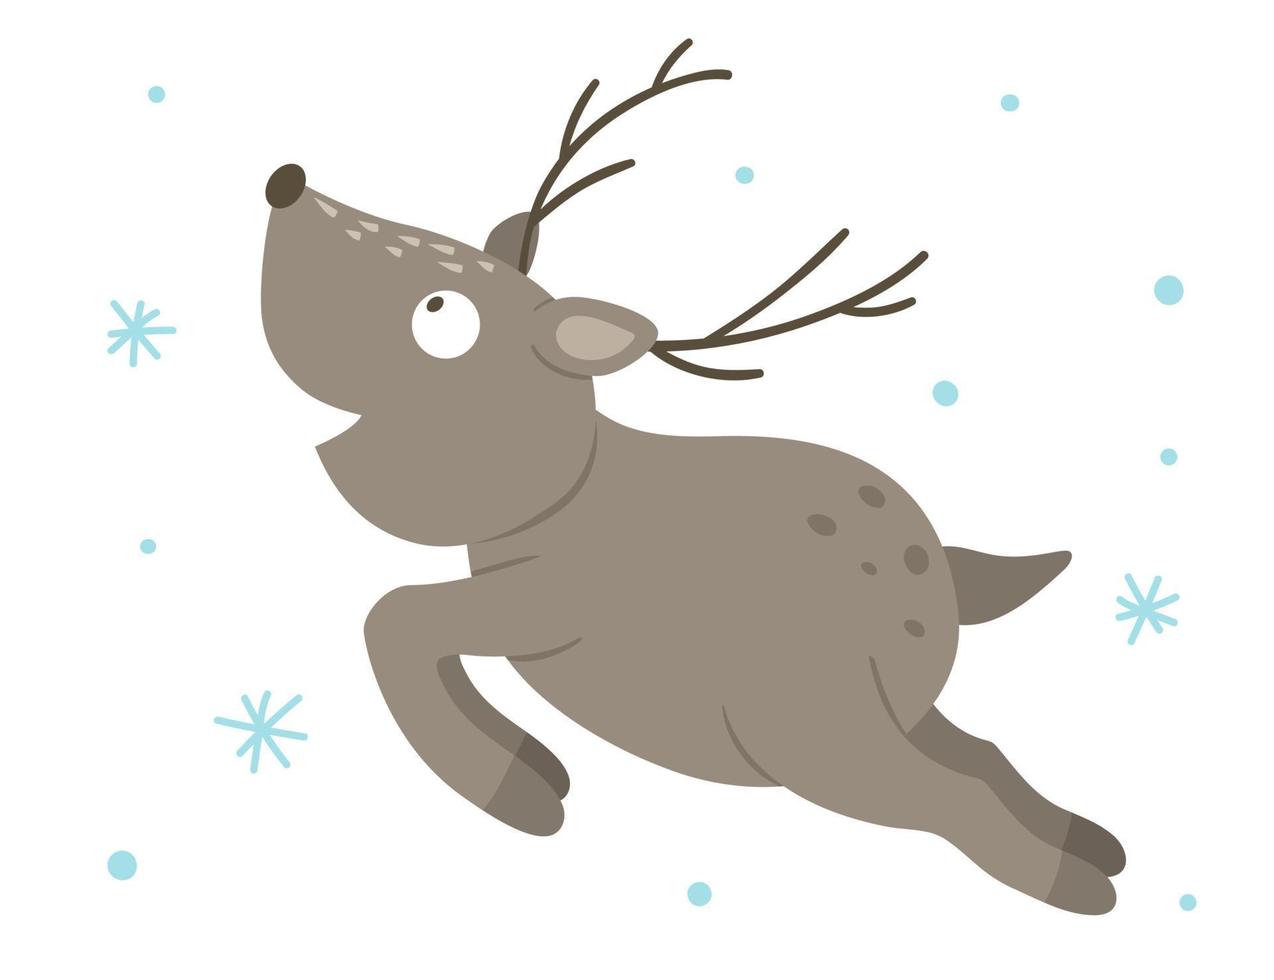 cervo in esecuzione piatto disegnato a mano di vettore con i fiocchi di neve. scena invernale divertente con animali del bosco. illustrazione animalesca della foresta carina per la stampa, la cancelleria